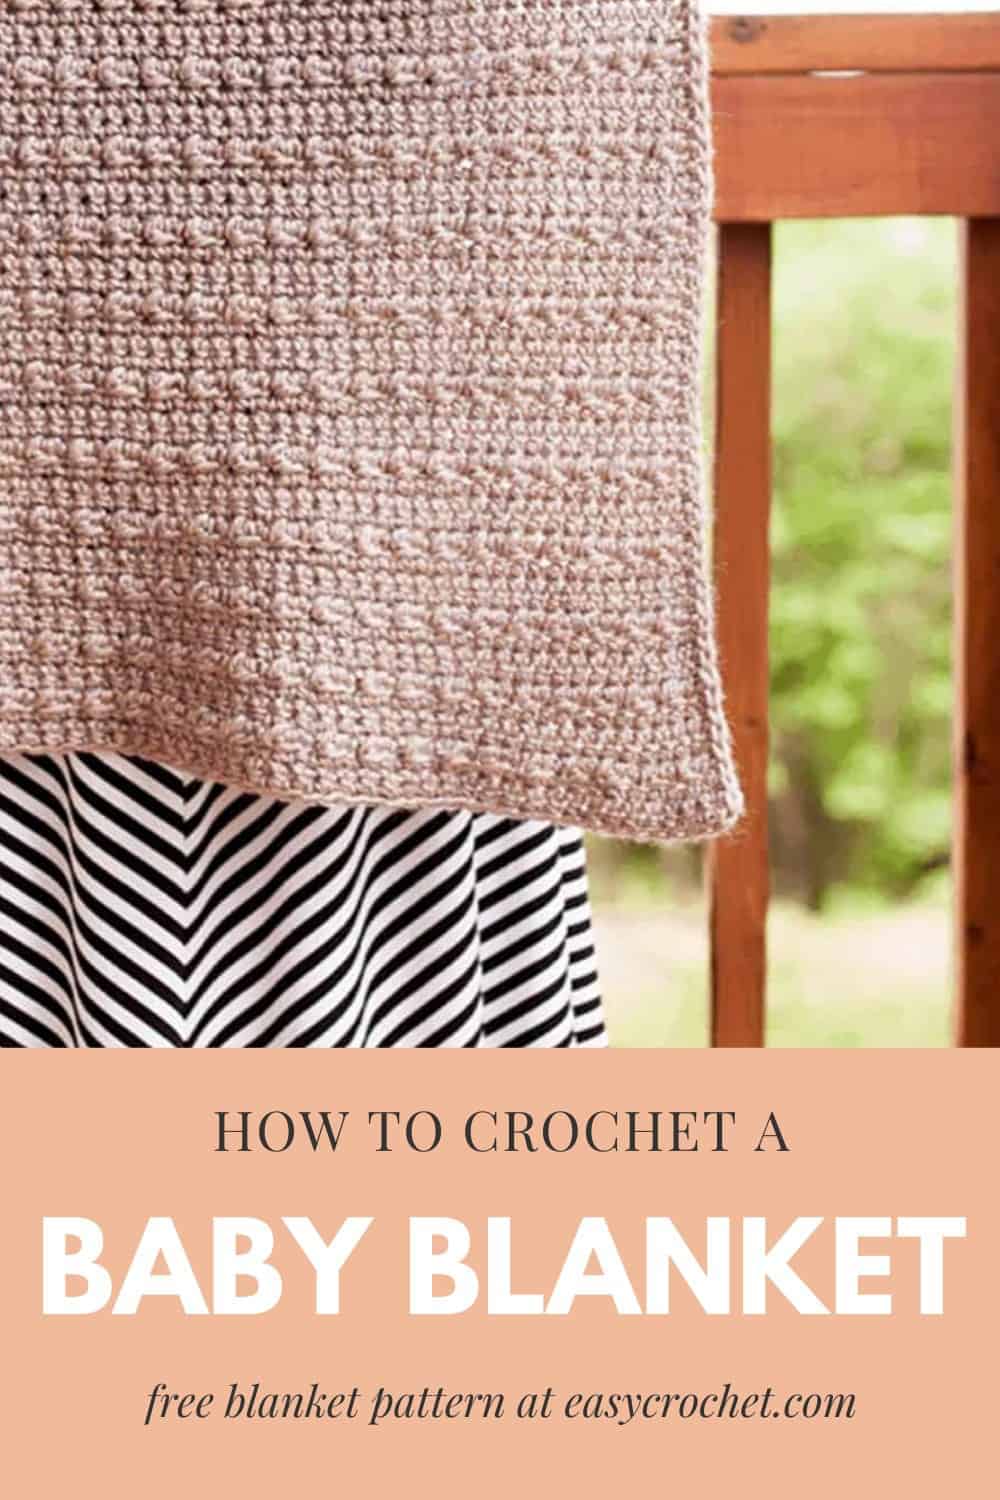 Stoney Pebble Stitch Crochet Baby Blanket via @easycrochetcom